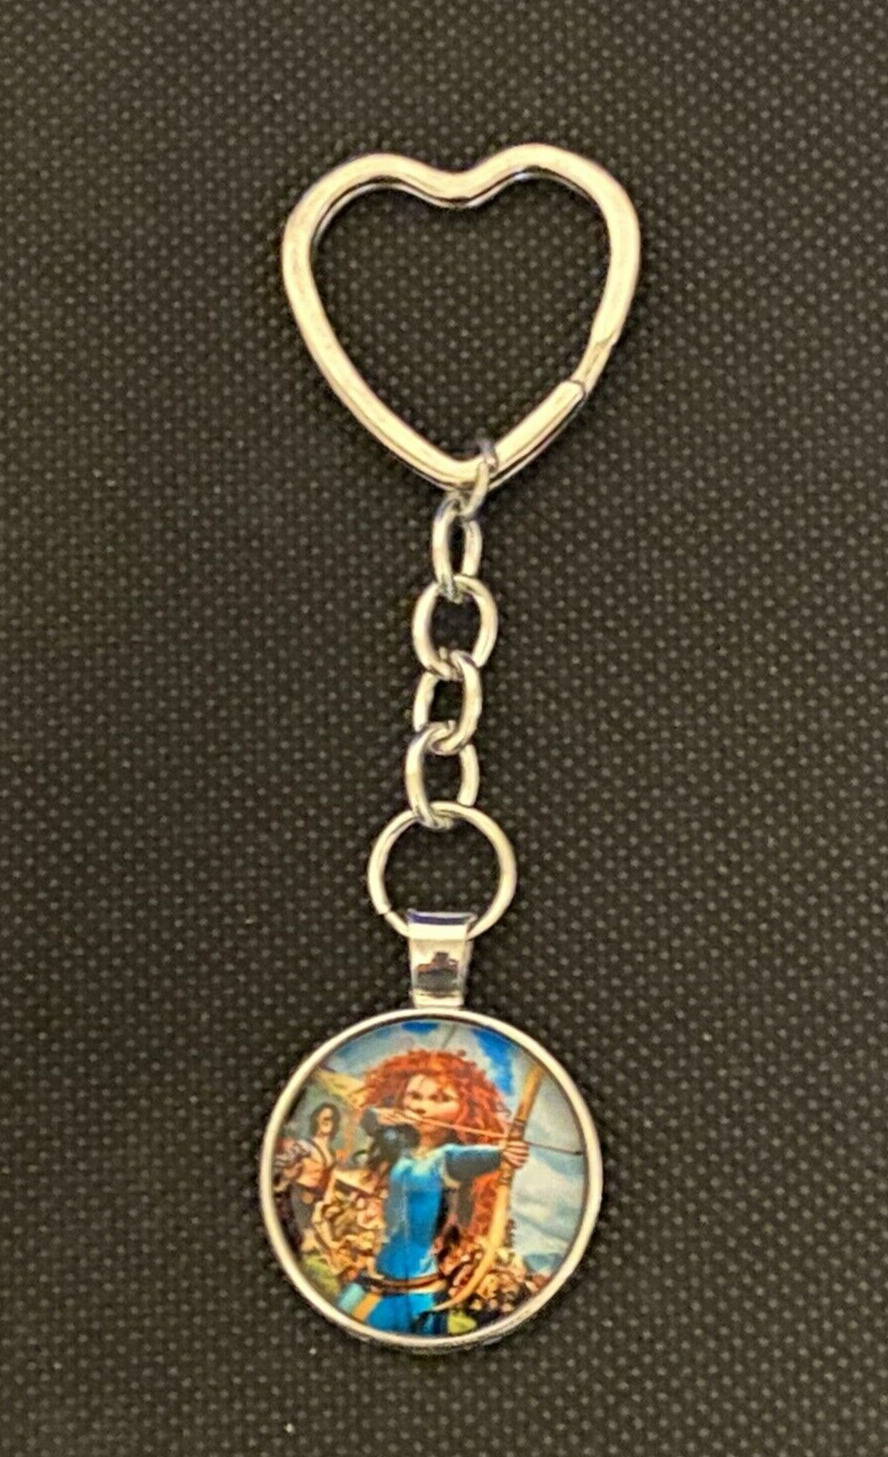 Disney PRINCESS MERIDA Brave Keychain / Keyring - Gift Stocking Stuffer